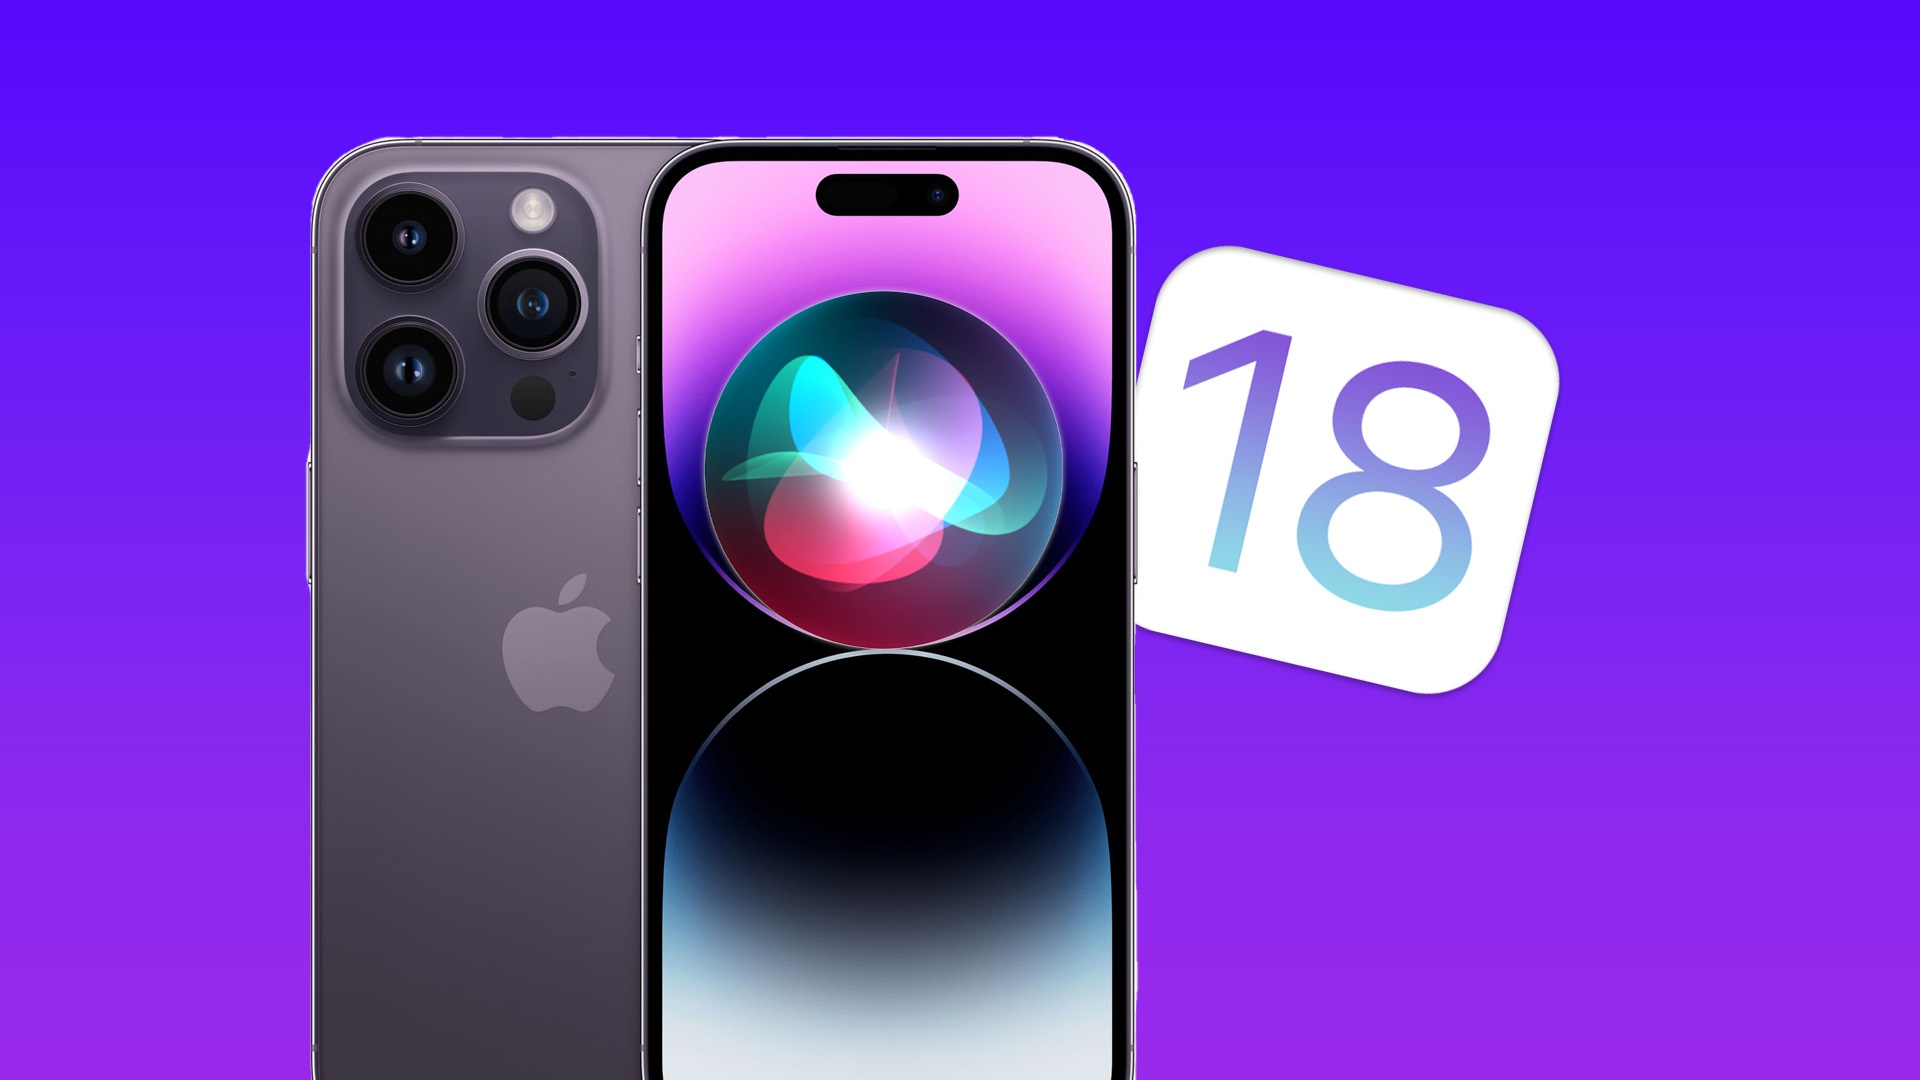 #iOS 18 soll endlich die Features bekommen, bei denen die Konkurrenz schon längst besser ist